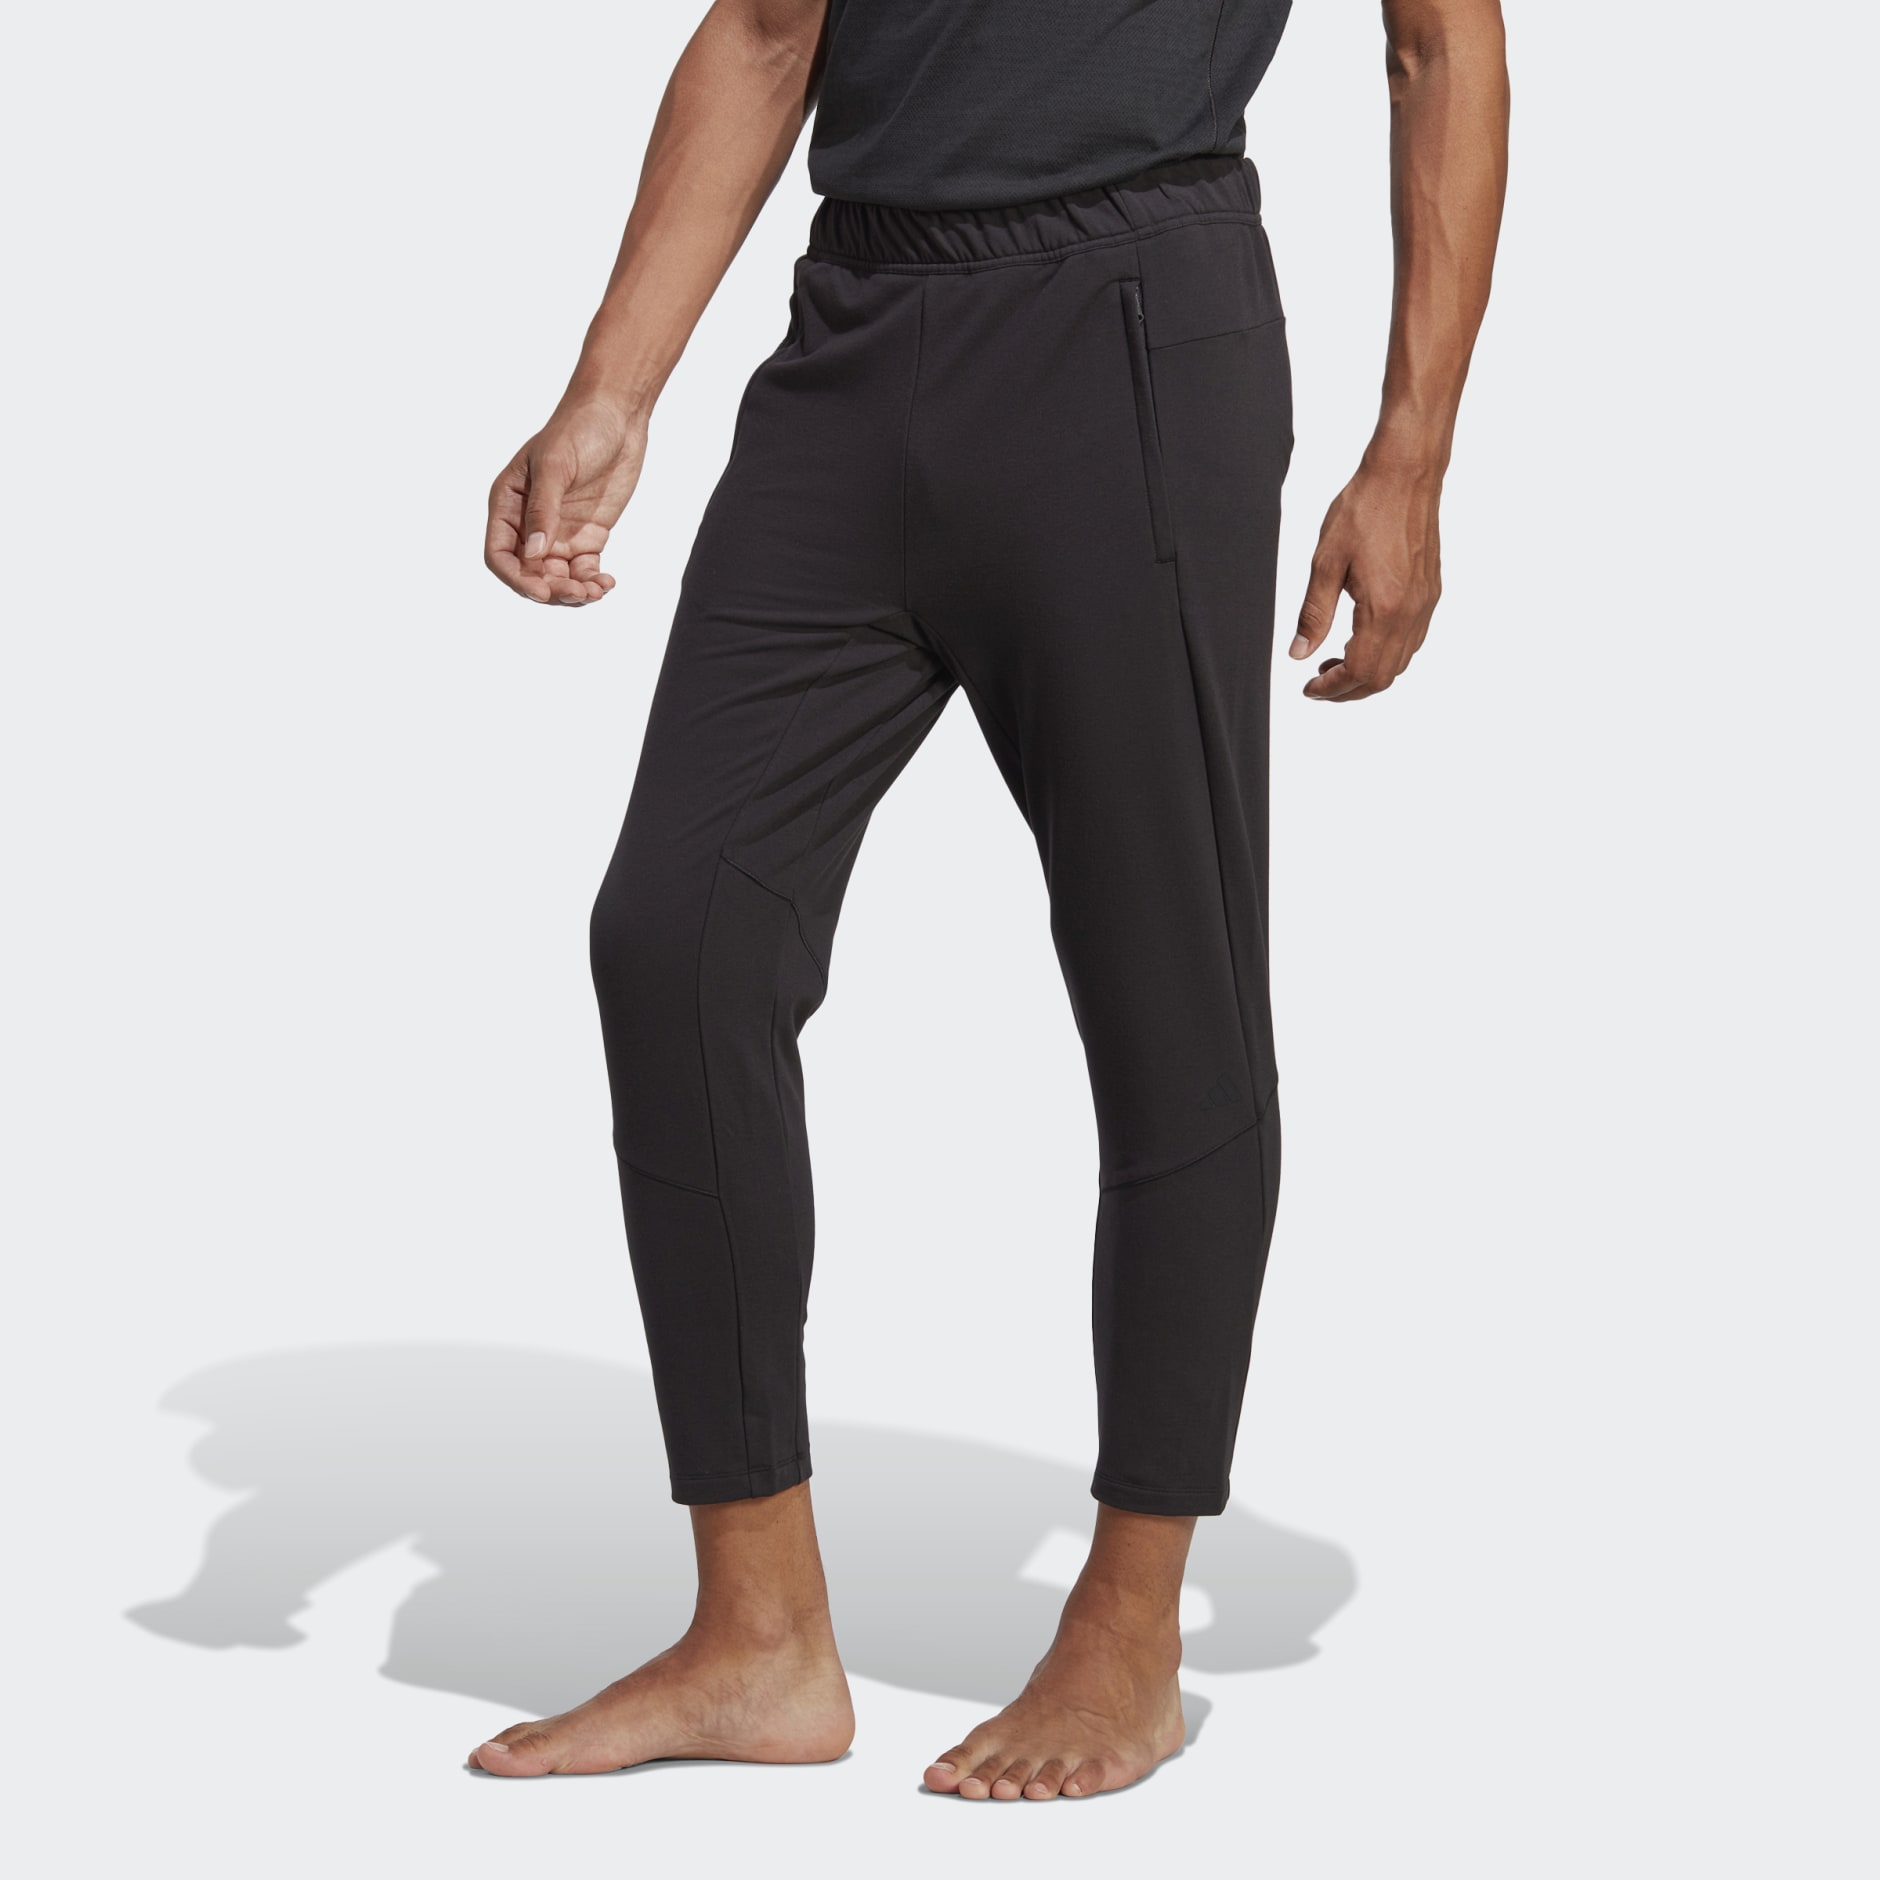 Men's Clothing - Designed for Training Yoga 7/8 Training Pants